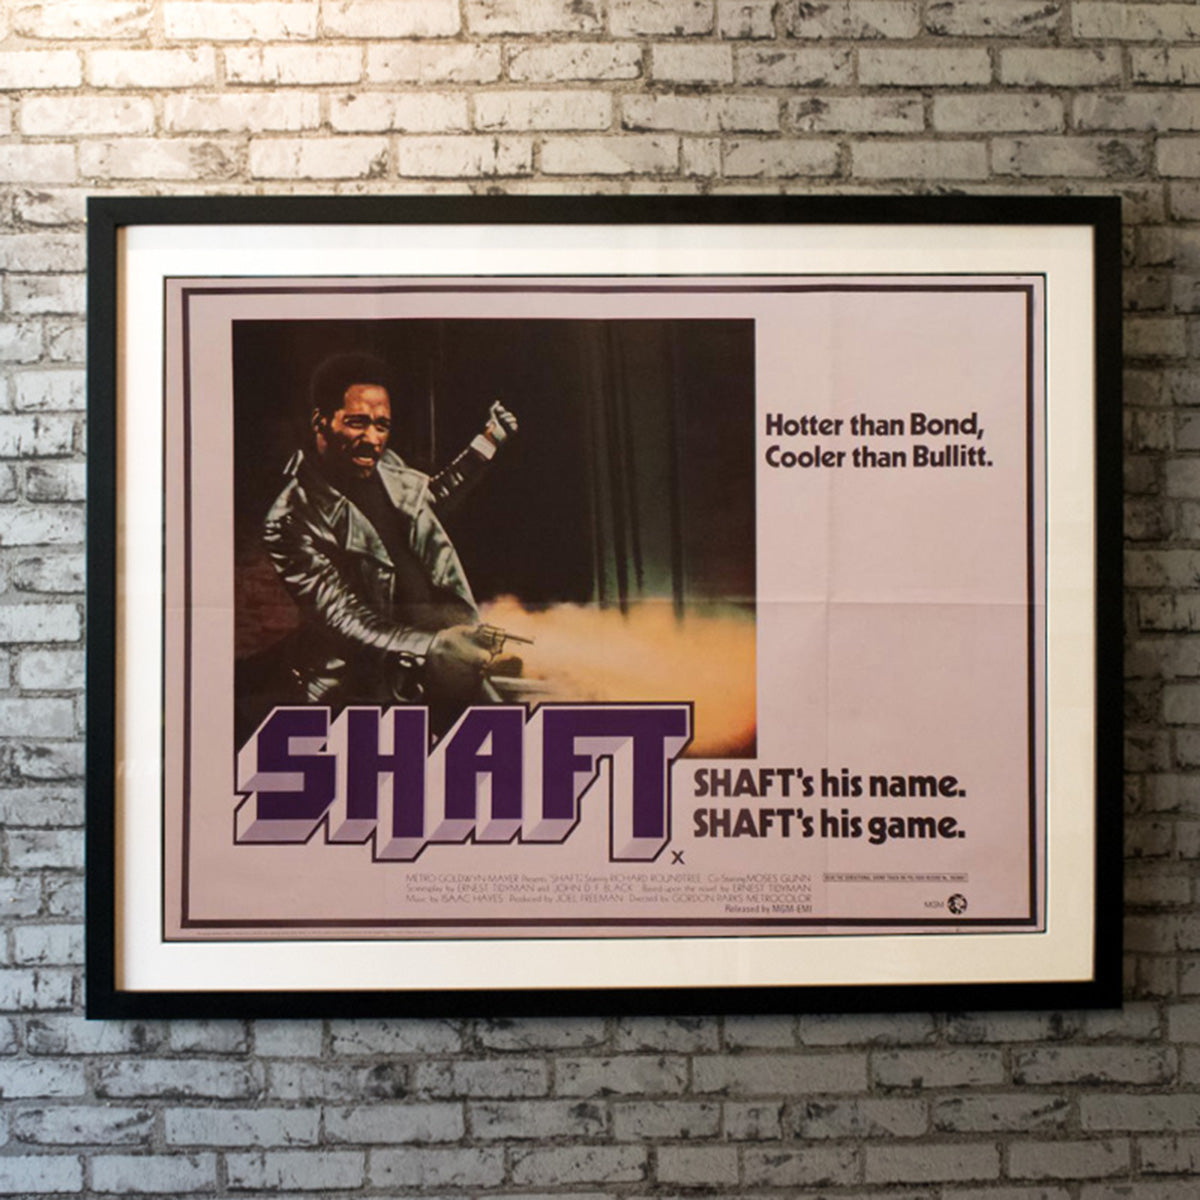 Original Movie Poster of Shaft (1971)